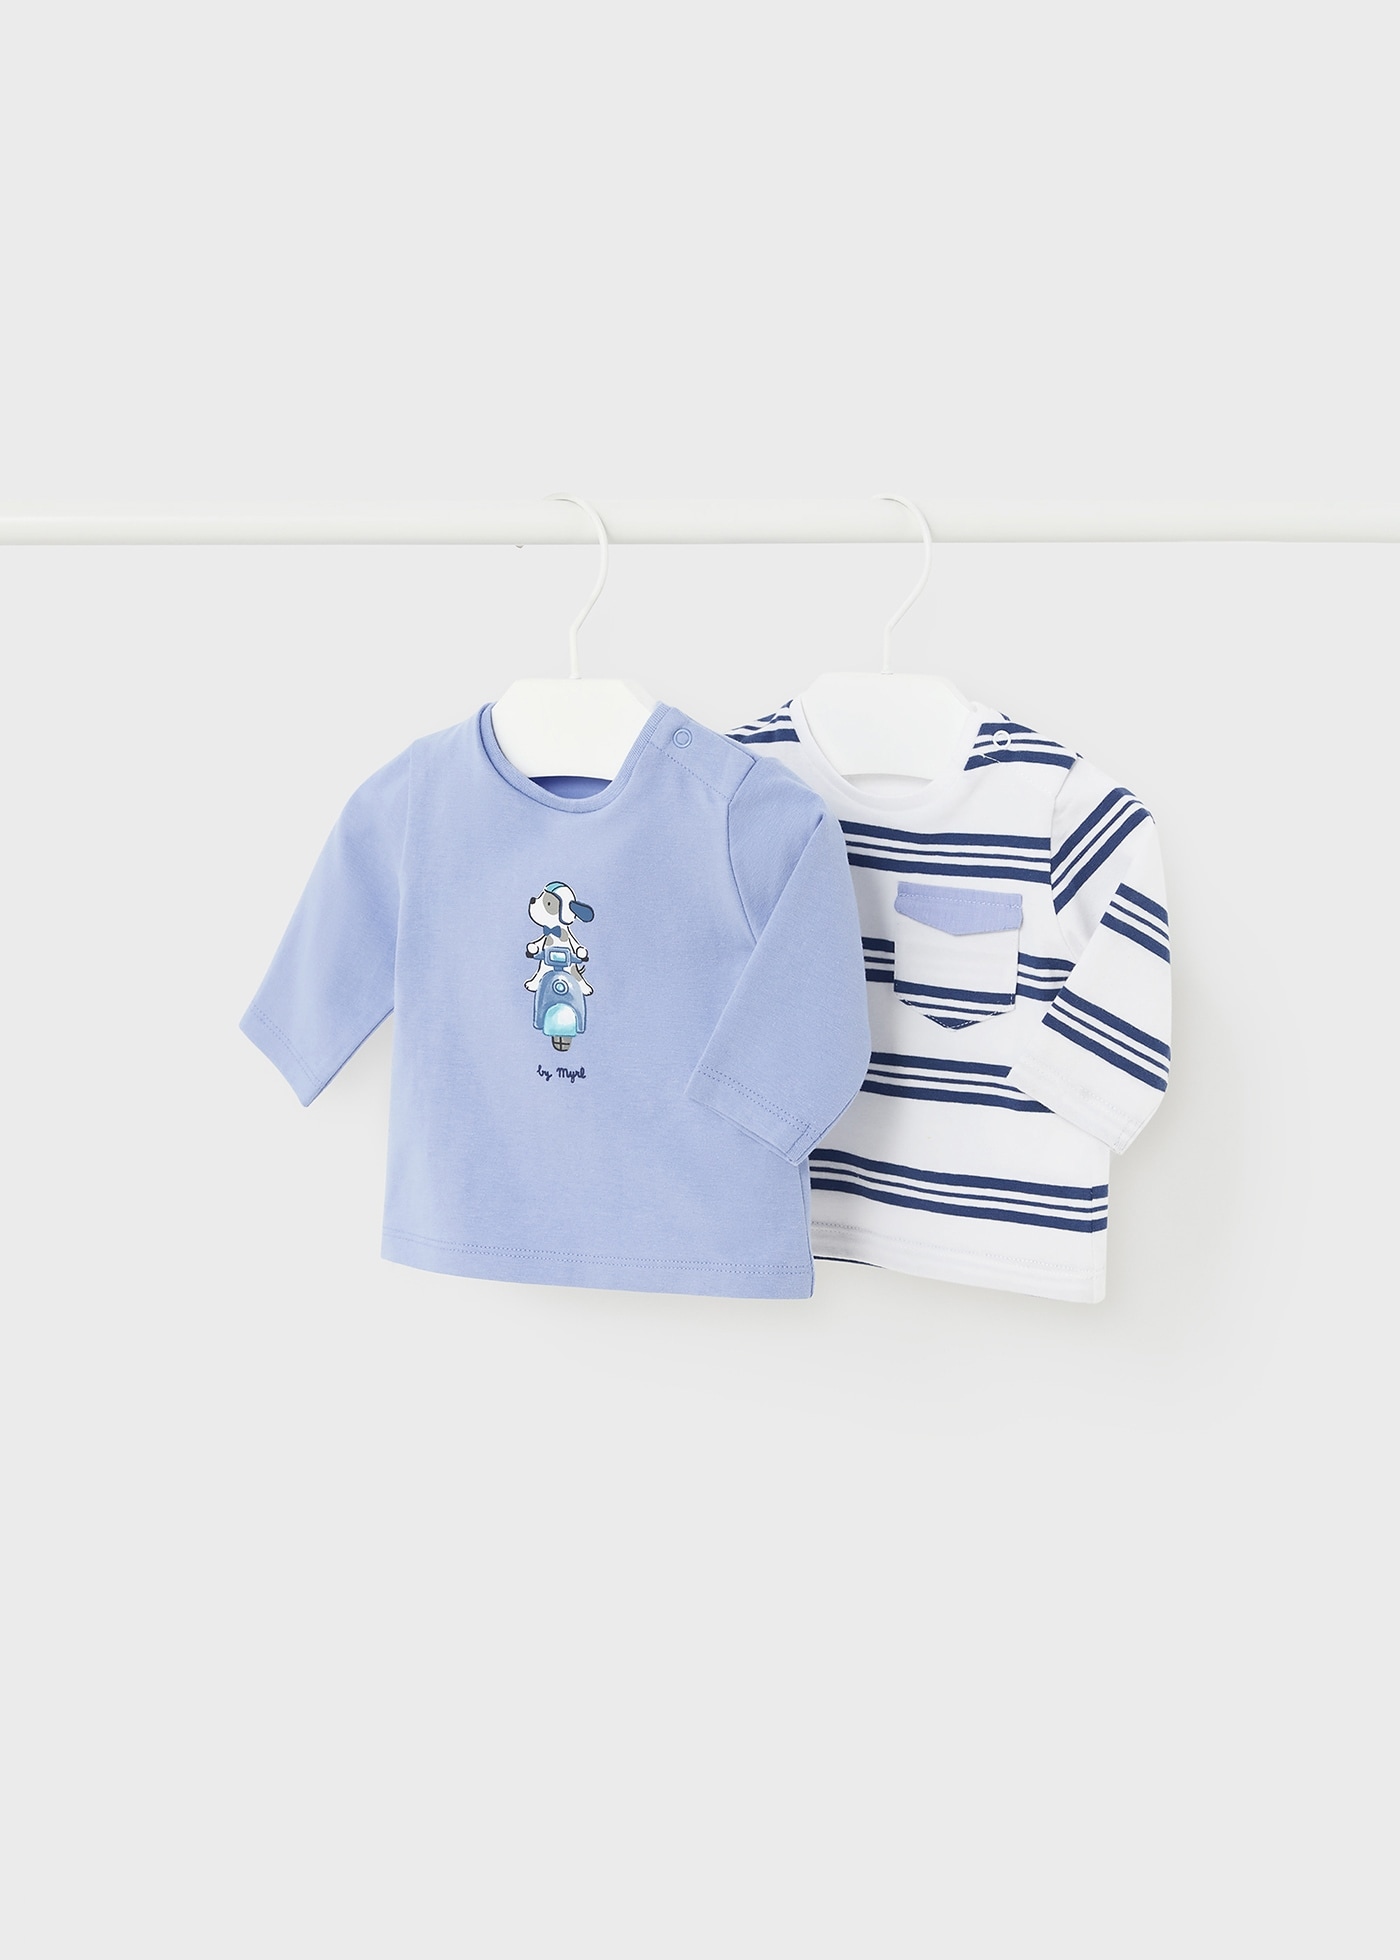 2er Set langarm Shirts Neugeborene